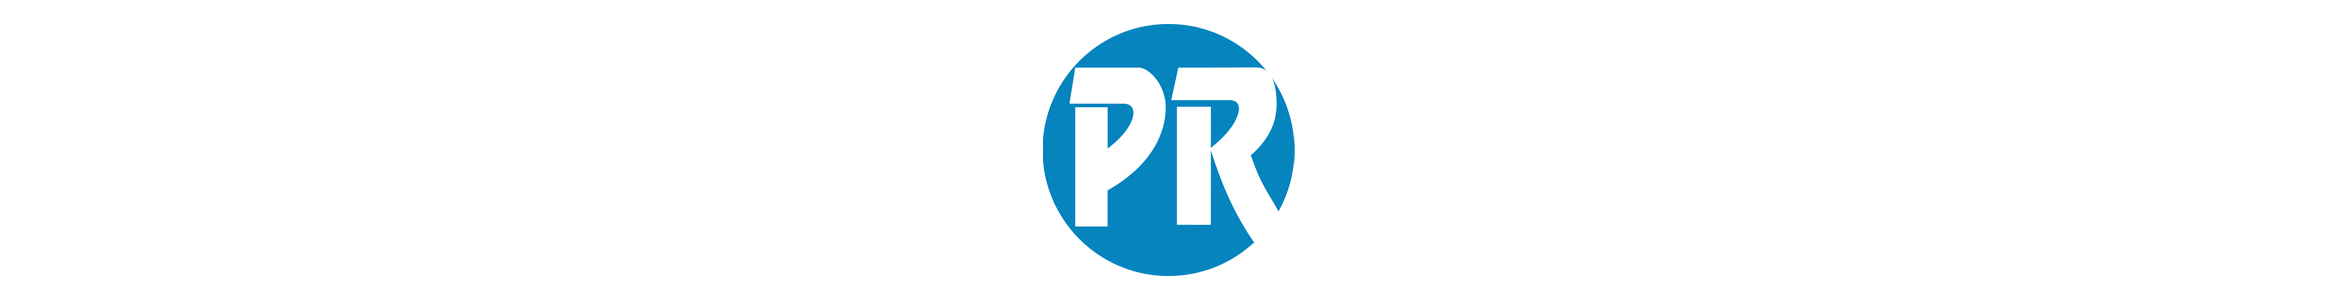 Prensa Regional